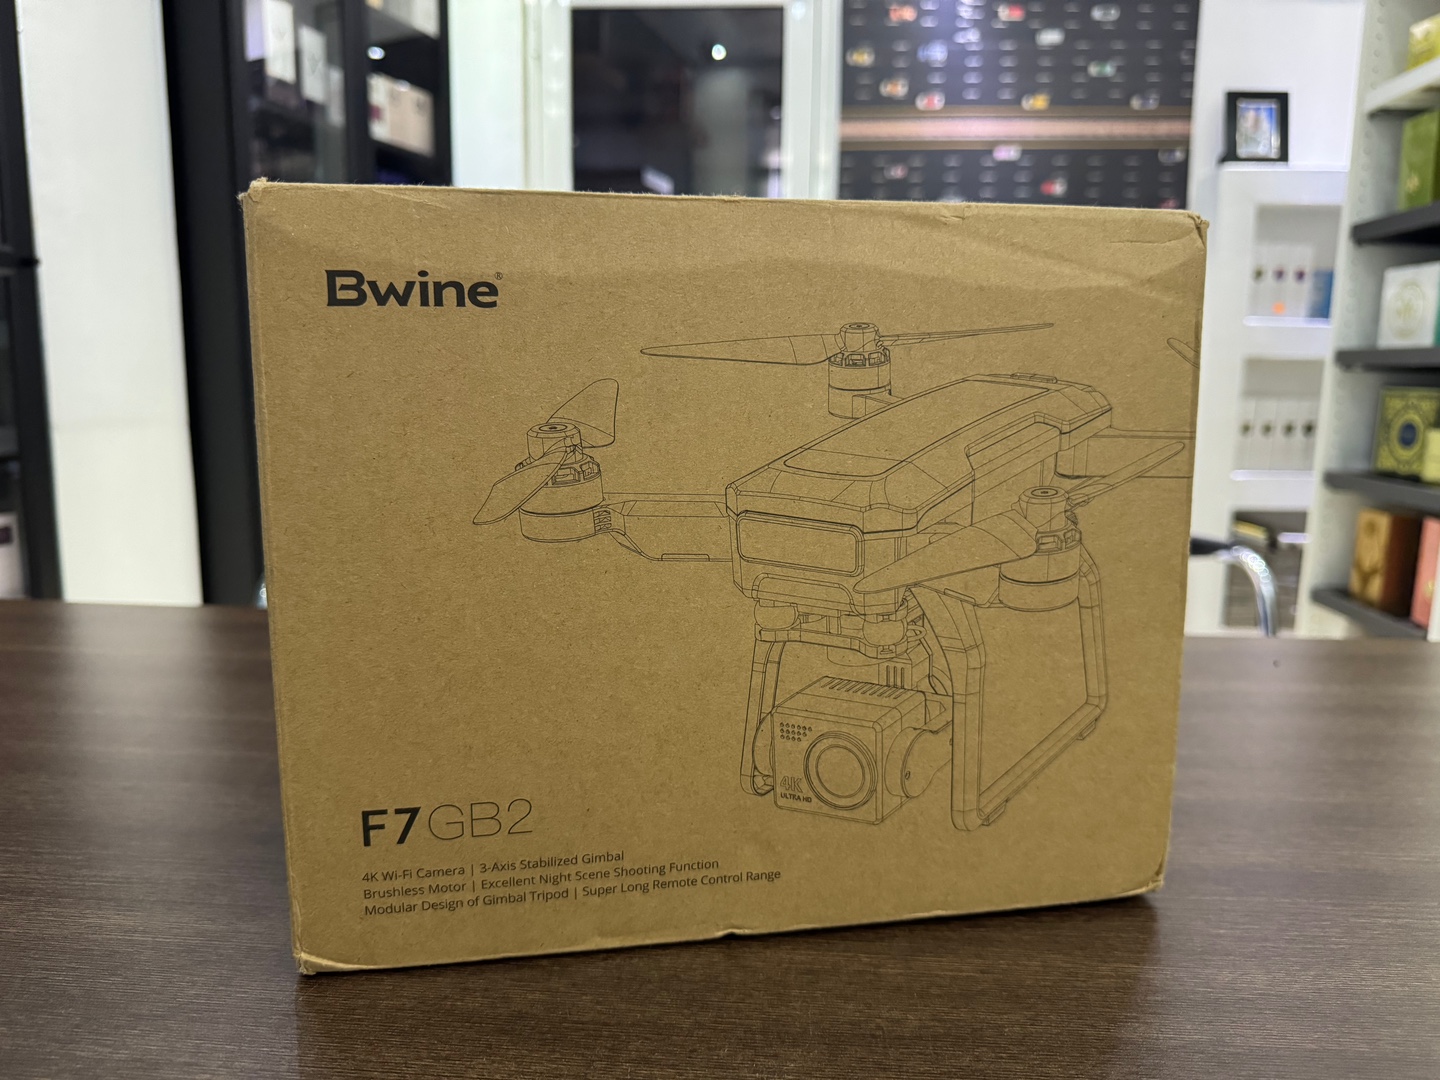 camaras y audio - Drone Bwine F7GB2 Nuevo Sellado Completo + EXTRAS!!,